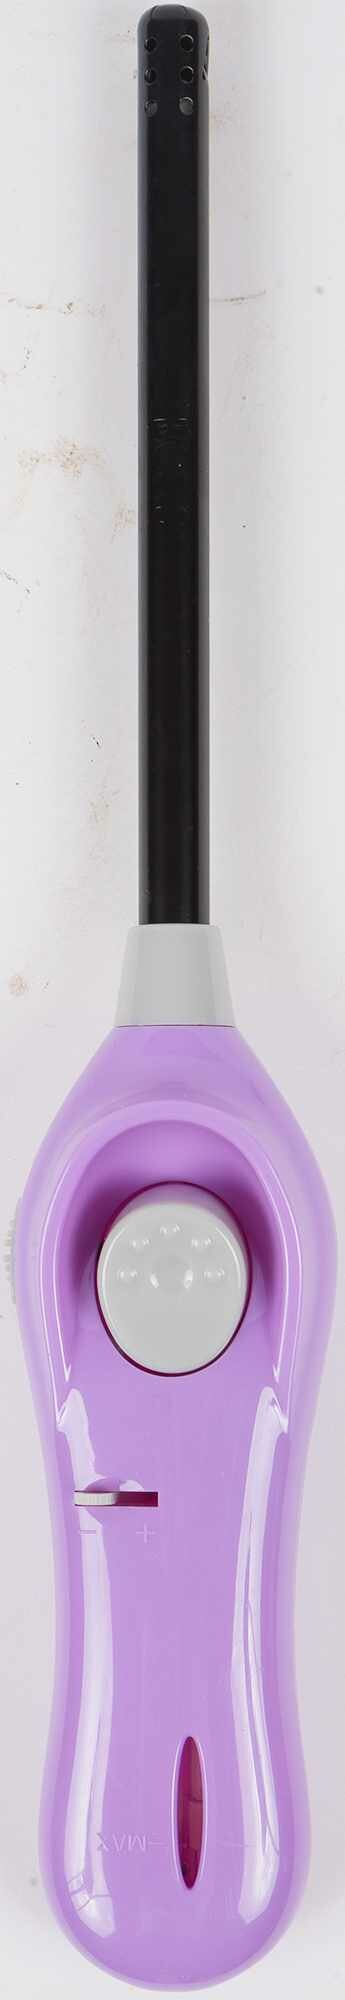 Зажигалка газовая Ecos GL-001V цвет фиолетовый